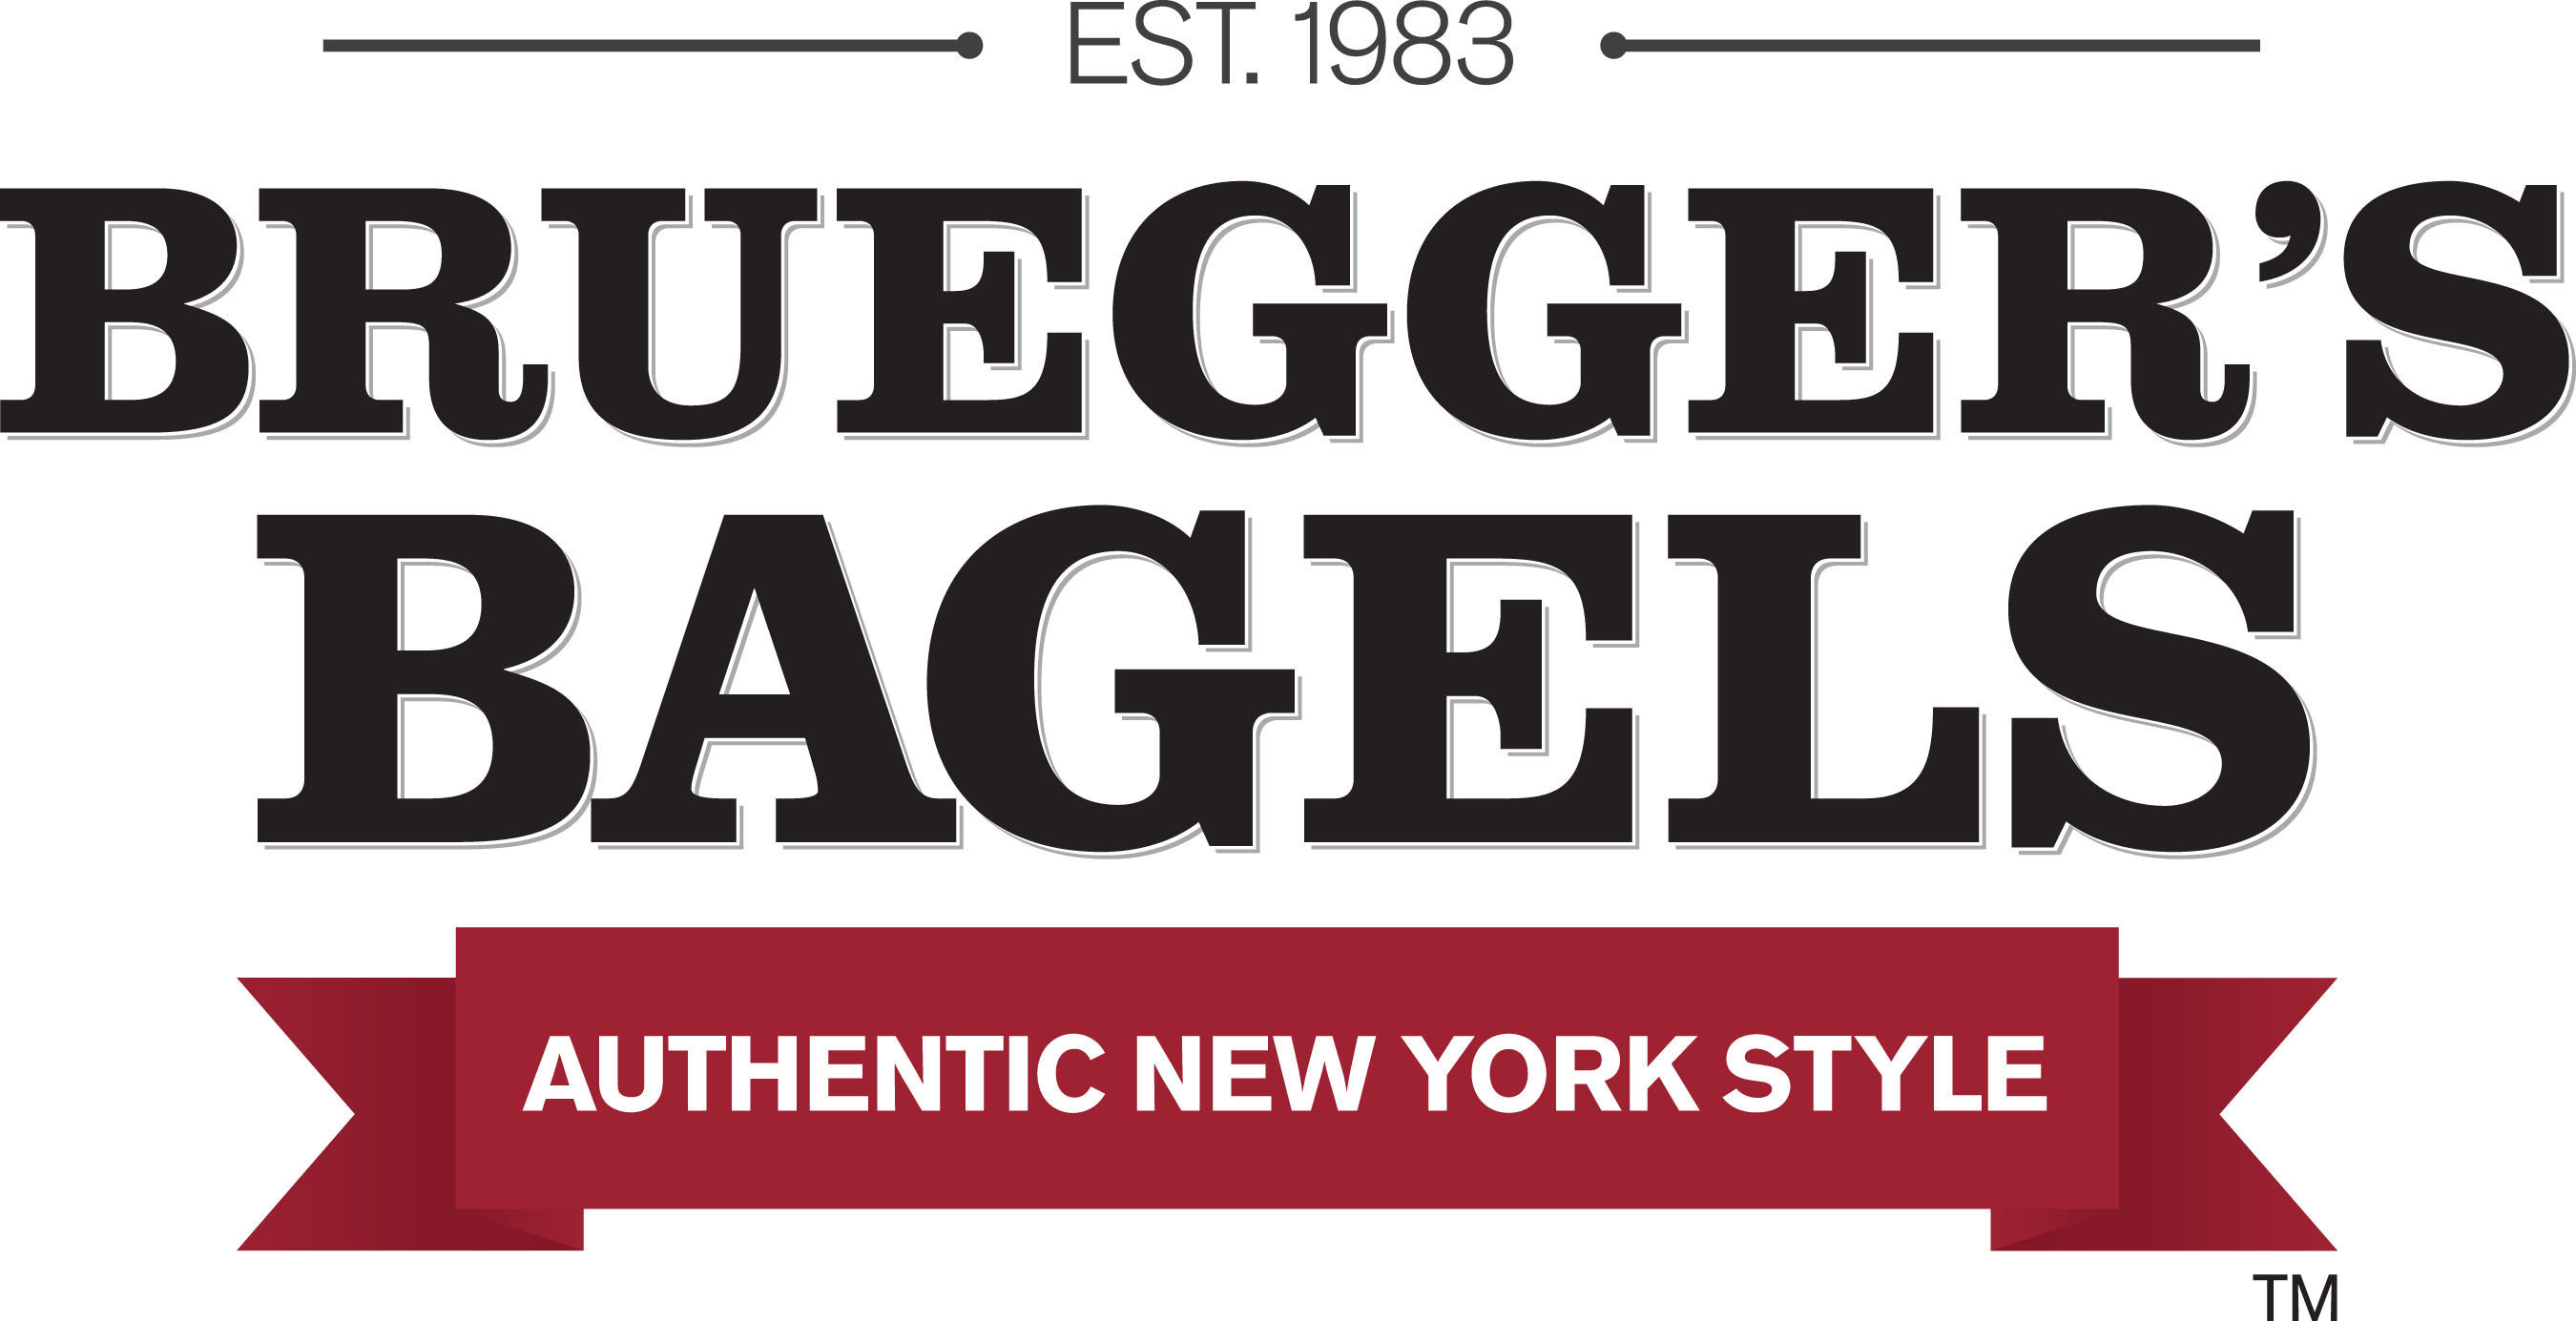 Bruegger's Bagels logo